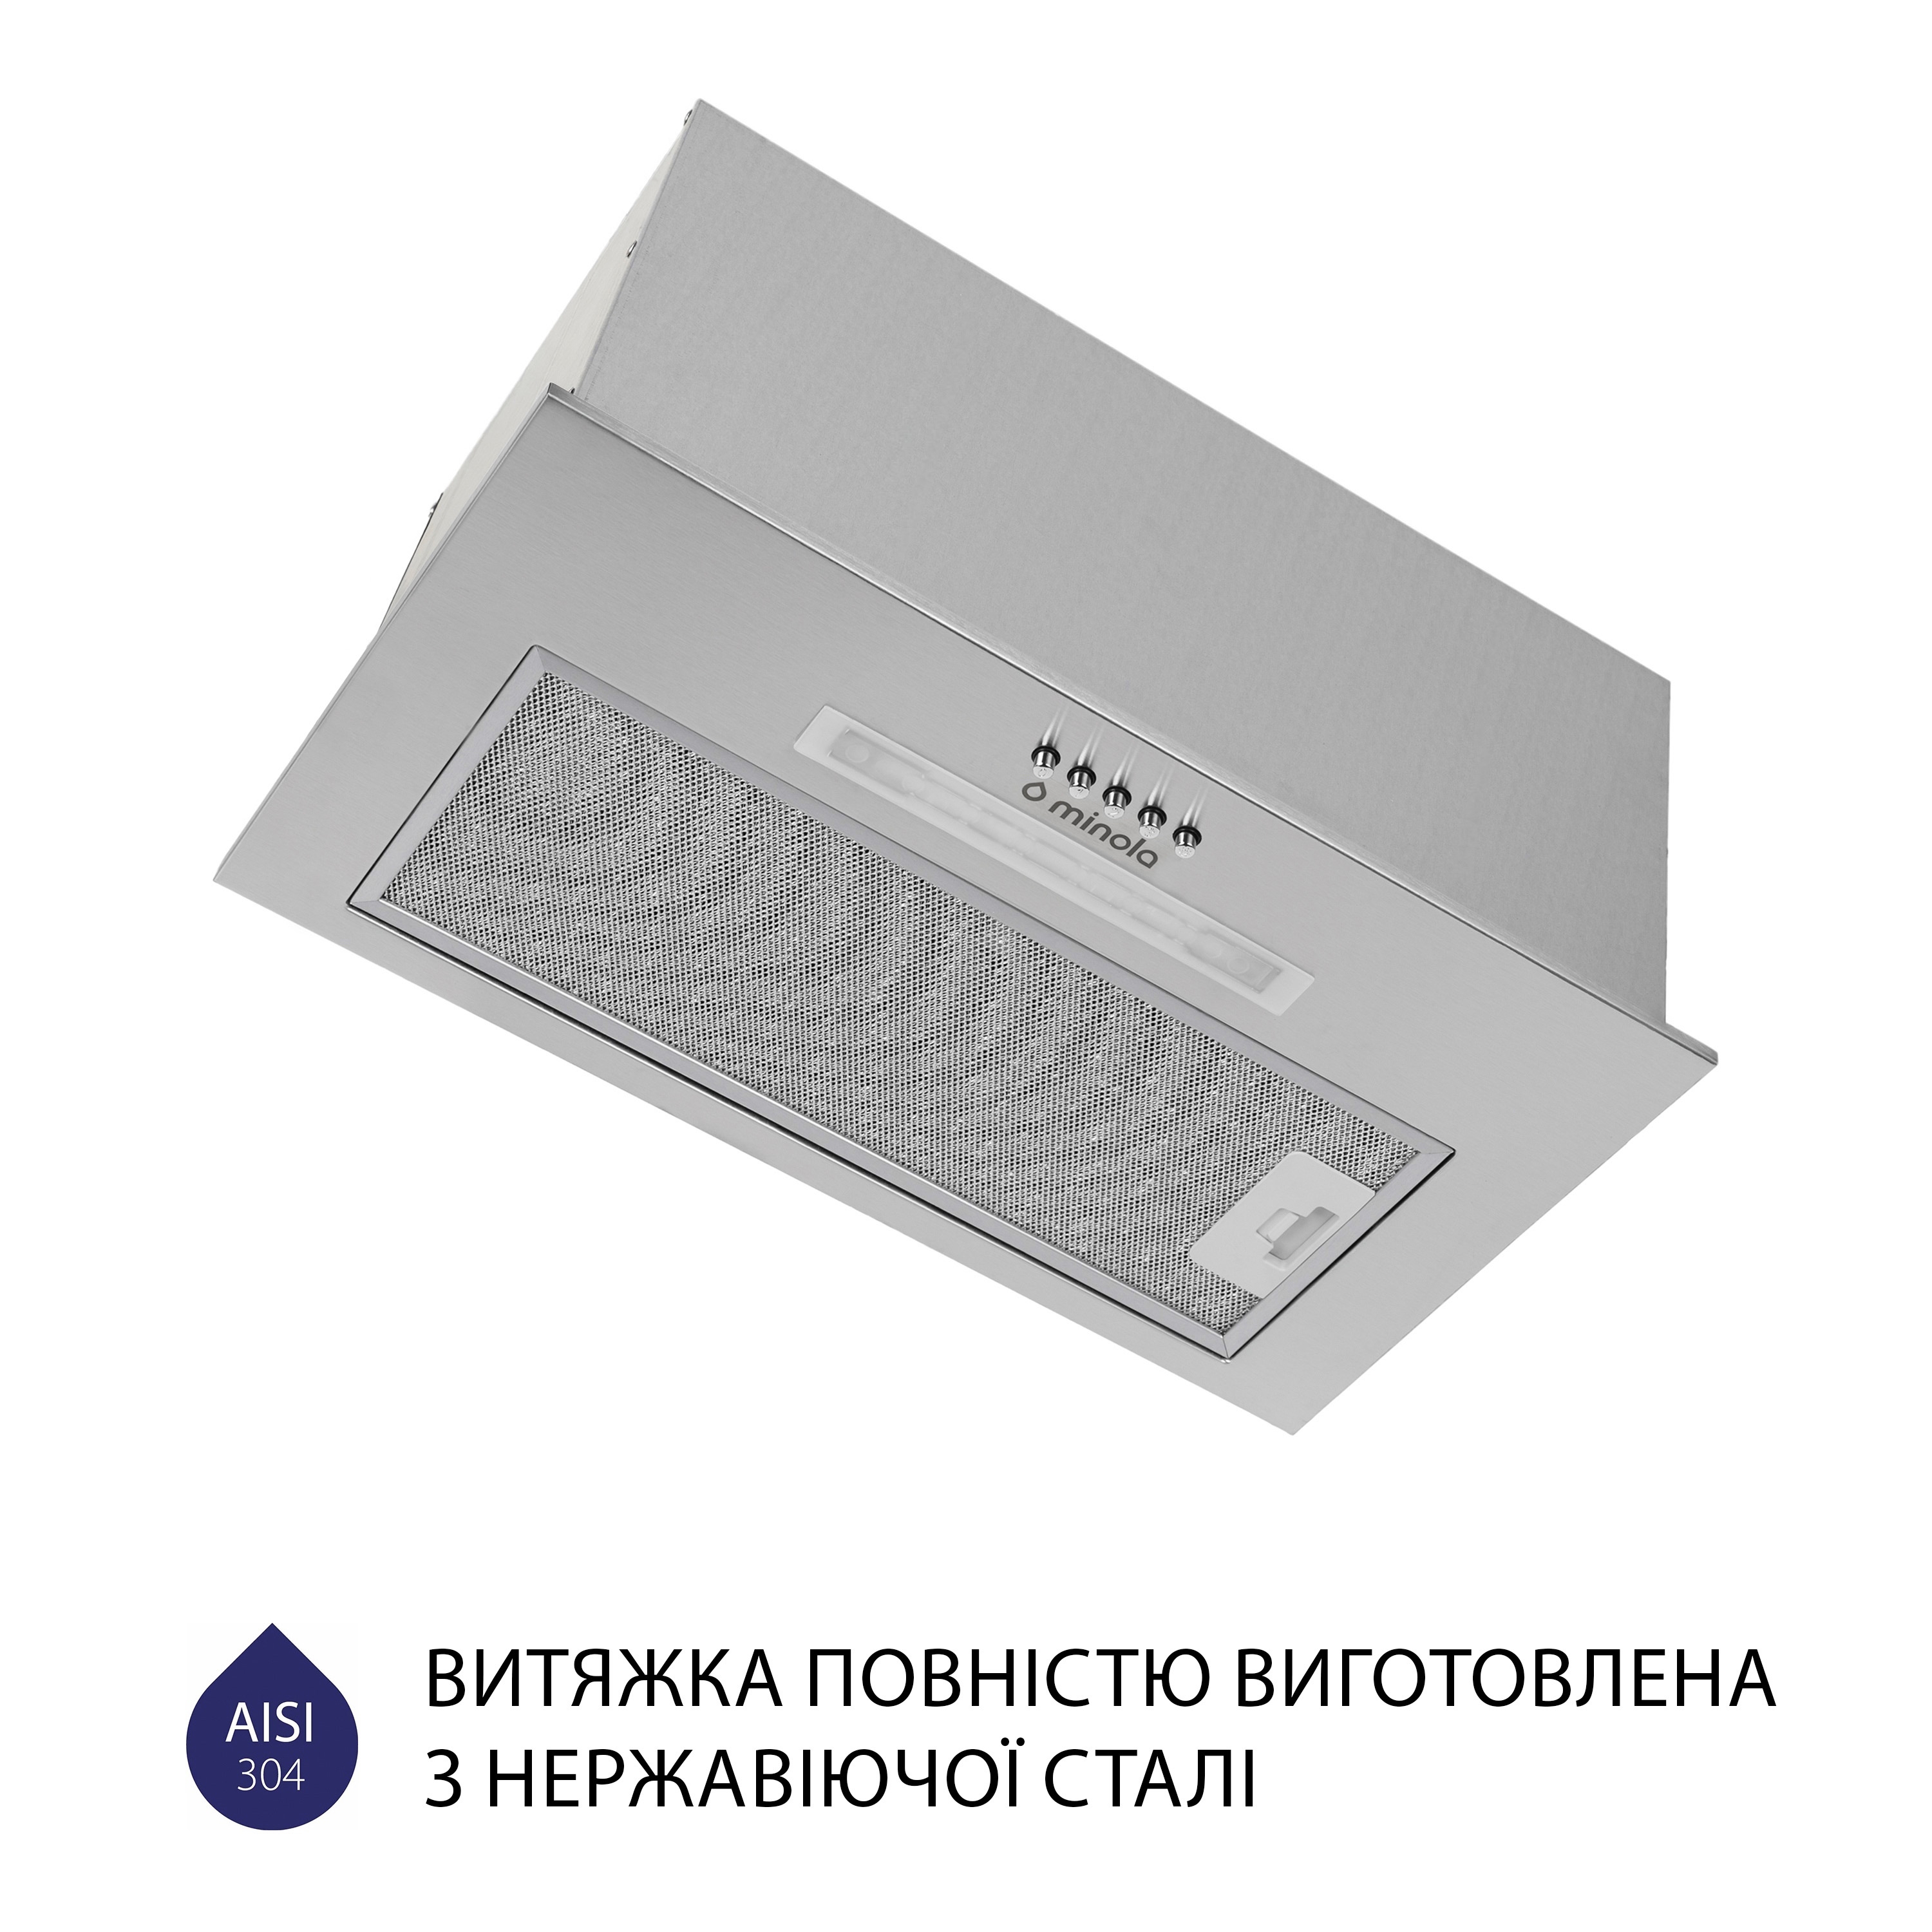 продаём Minola HBI 5623 I 1000 LED в Украине - фото 4